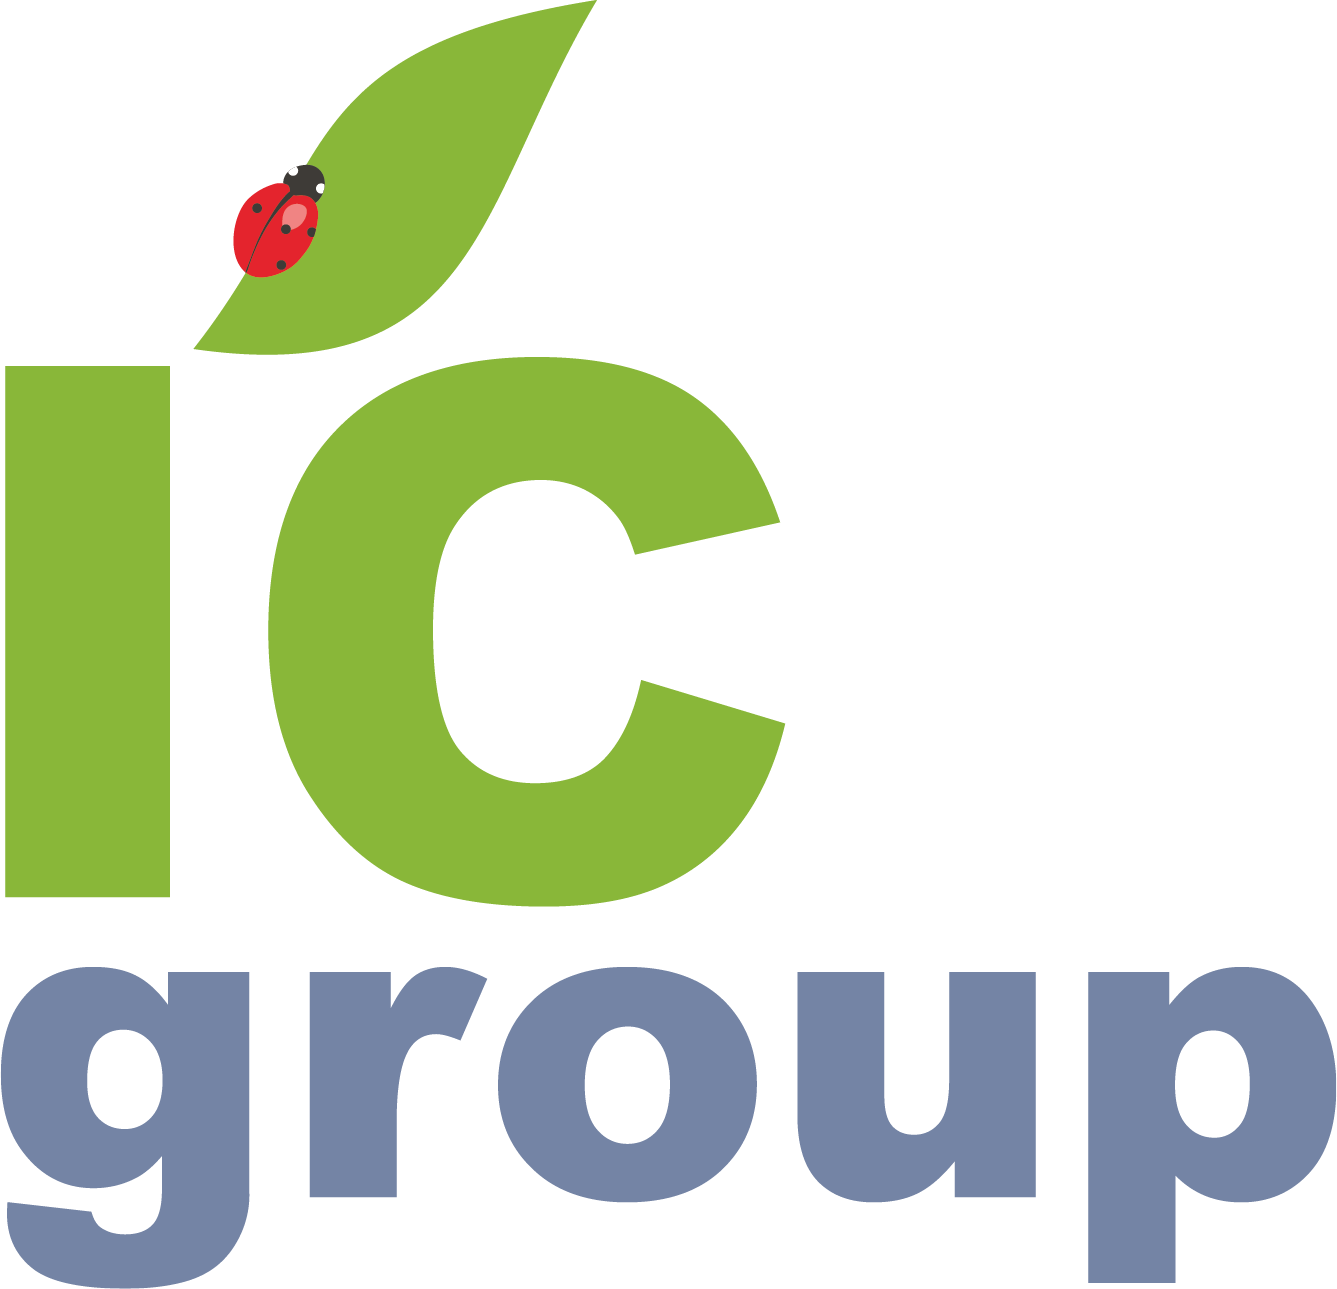 Ic group. Ic Group logo. Ic Group Симферополь лого.